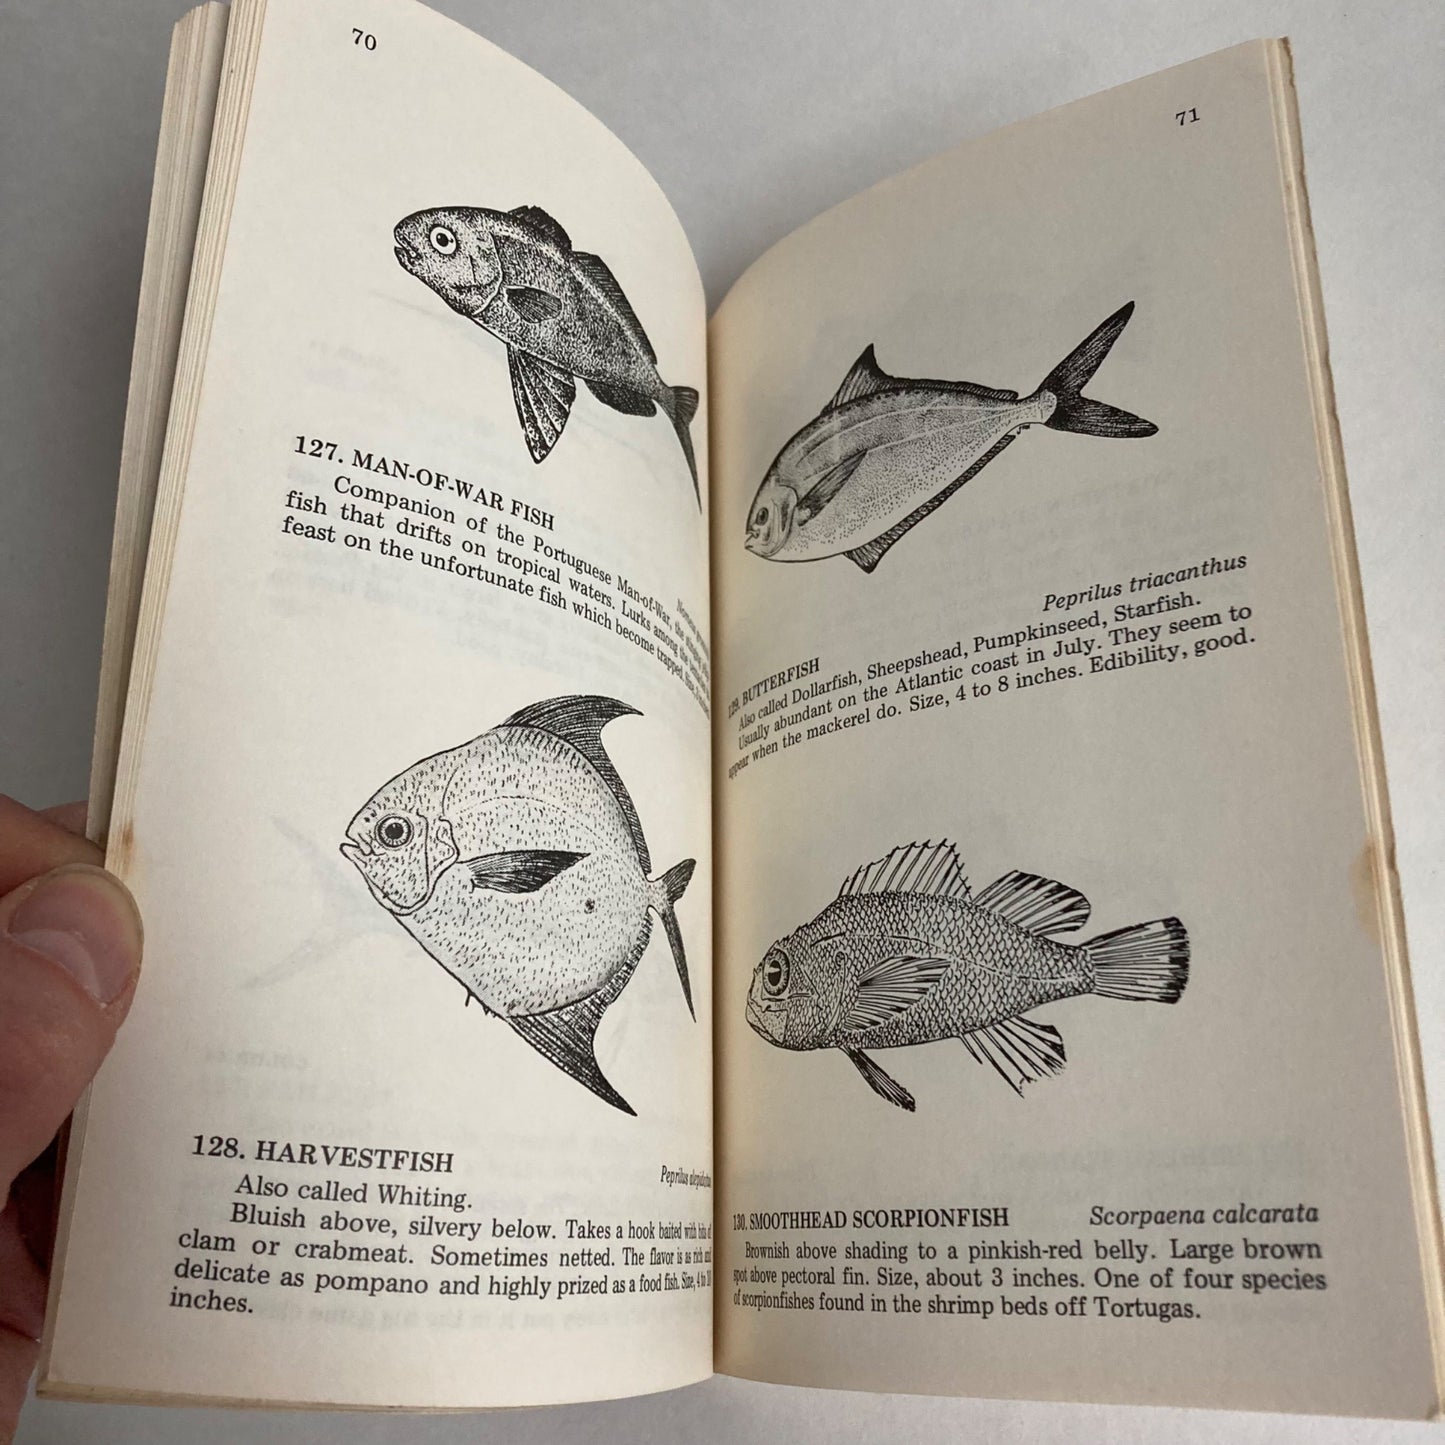 Vintage 1982 Florida Fishes Paperback Book